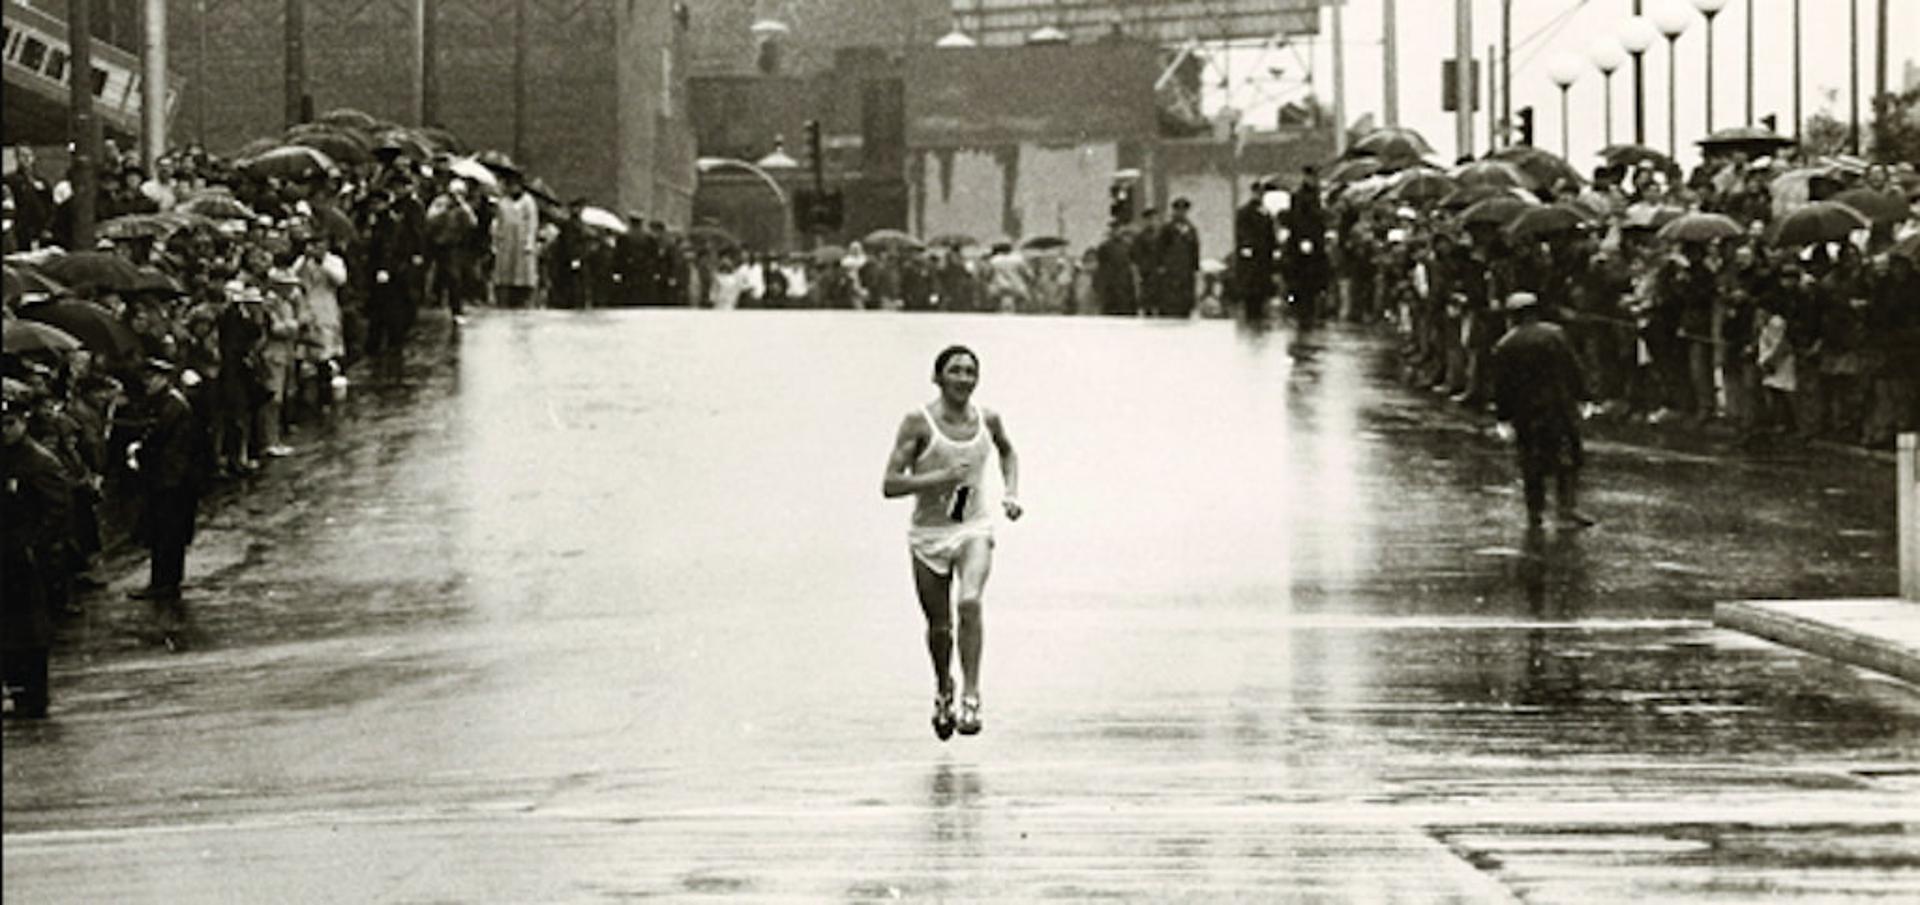 Ron Hill, uma lenda da maratona, morre aos 82 anos. (Foto de ronhil.com)